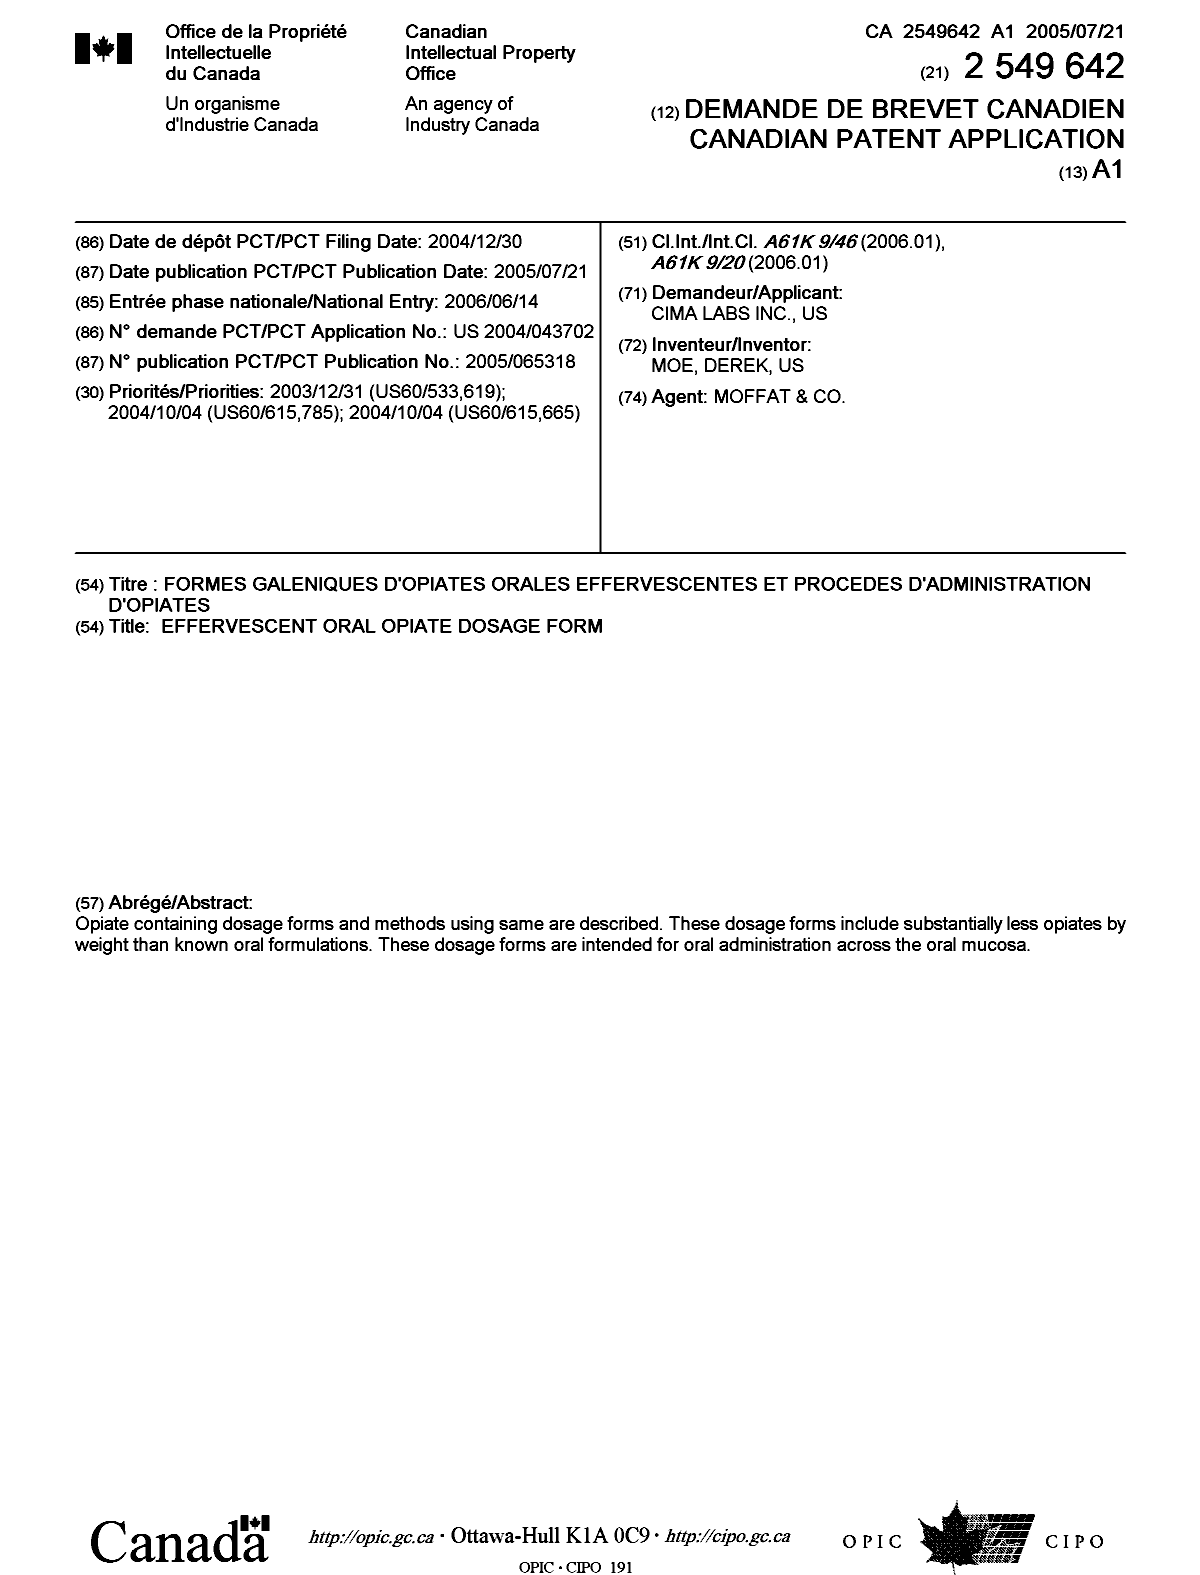 Document de brevet canadien 2549642. Page couverture 20060828. Image 1 de 1